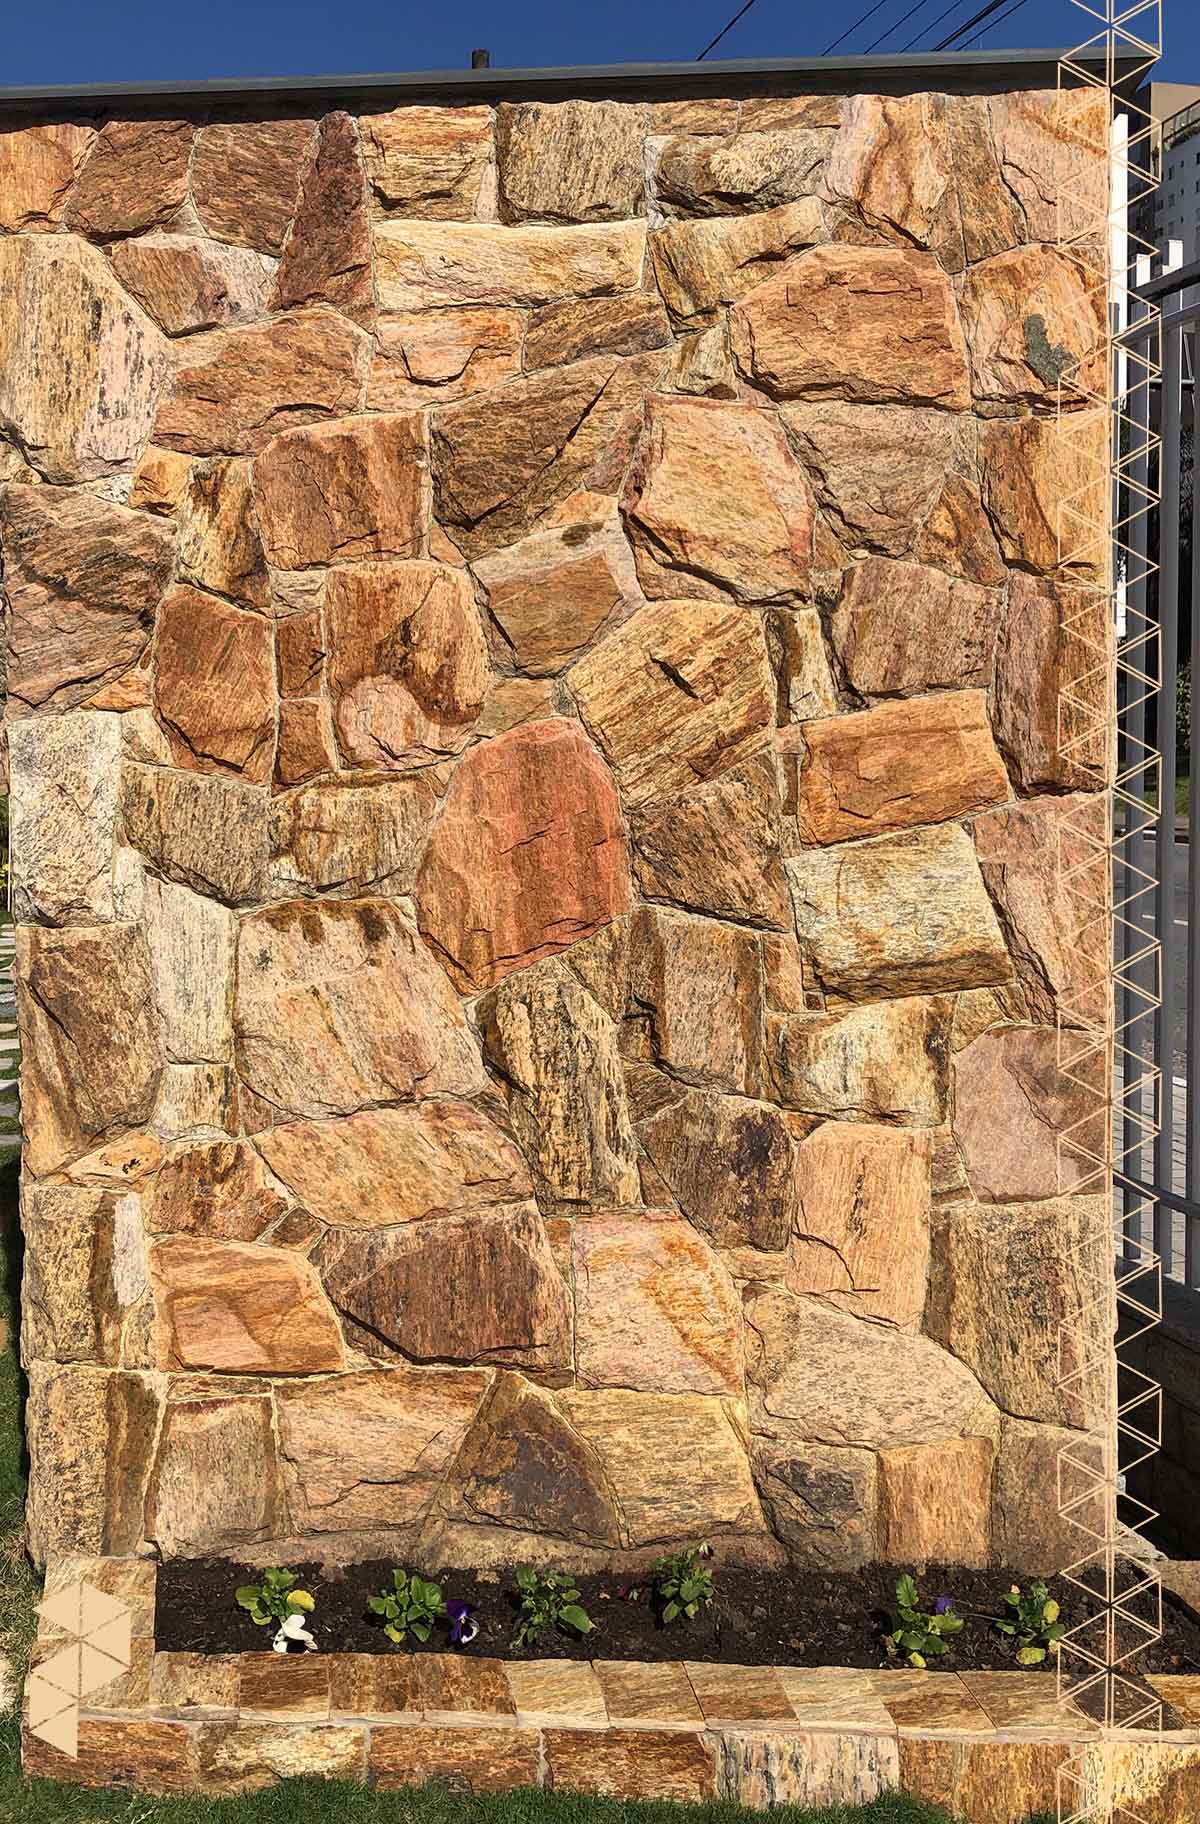 Komtelhas - Pedra Madeira Amarela utilizada para revestimento de muro e  Pedra Portuguesa branca e preta utilizada na calçada. Essas e outras pedras  você só encontra na Komtelhas! ☎️: (17) 3522-7799 📍Rua